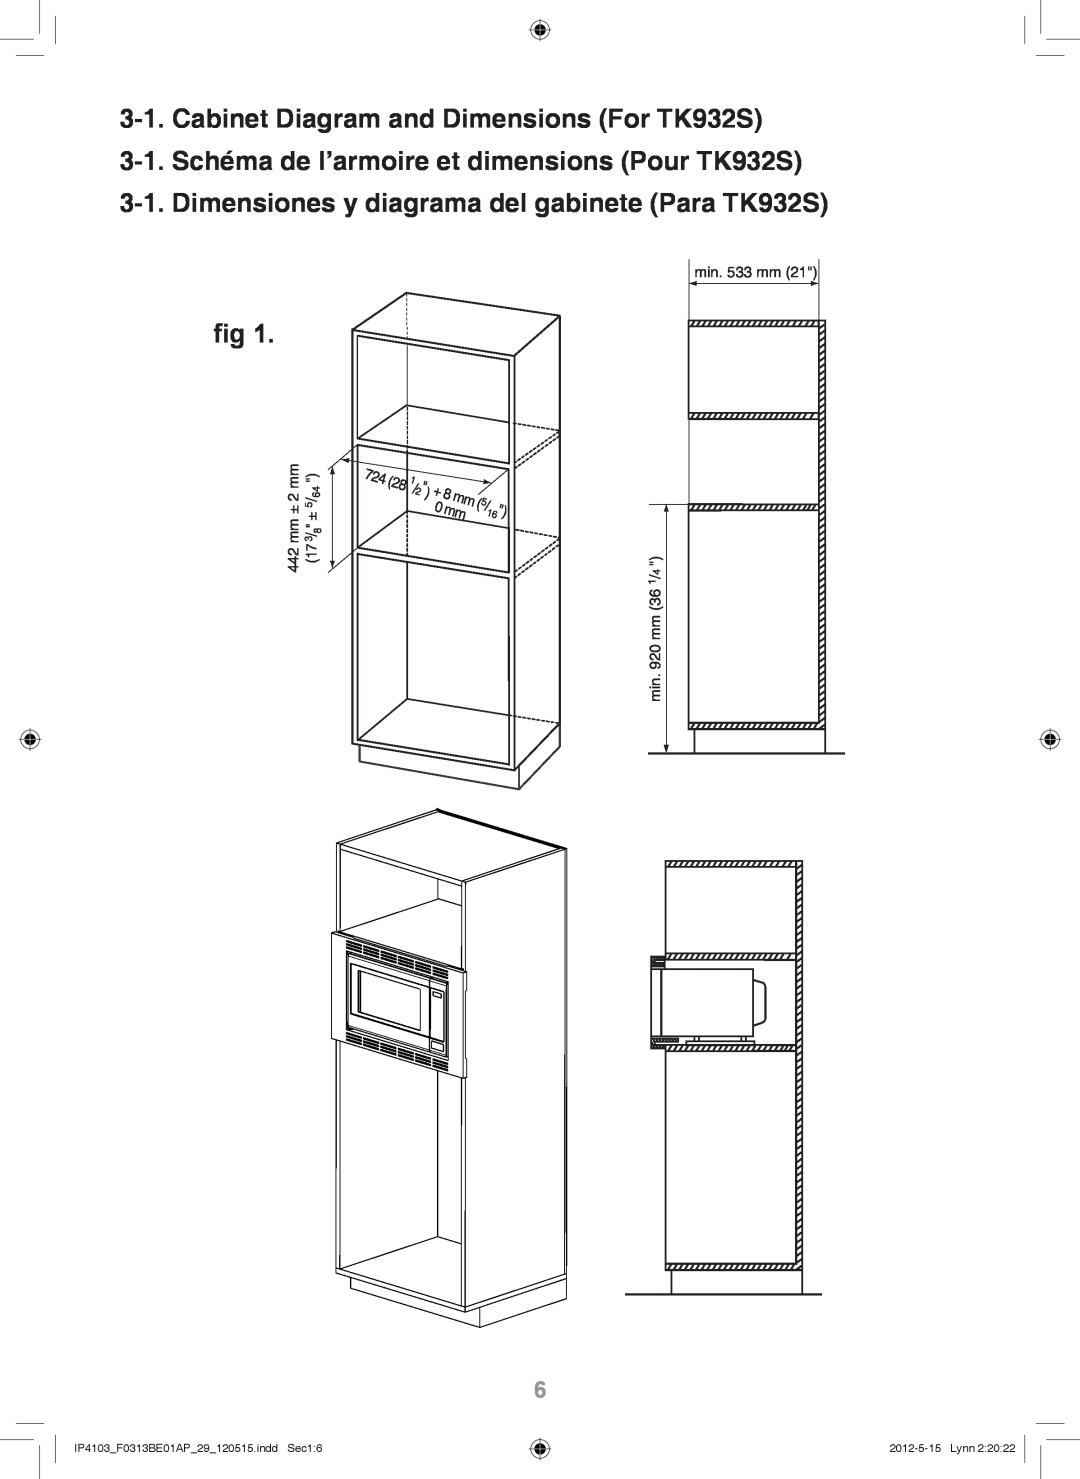 Panasonic NN-TK732S Cabinet Diagram and Dimensions For TK932S, 3-1.Schéma de l’armoire et dimensions Pour TK932S 